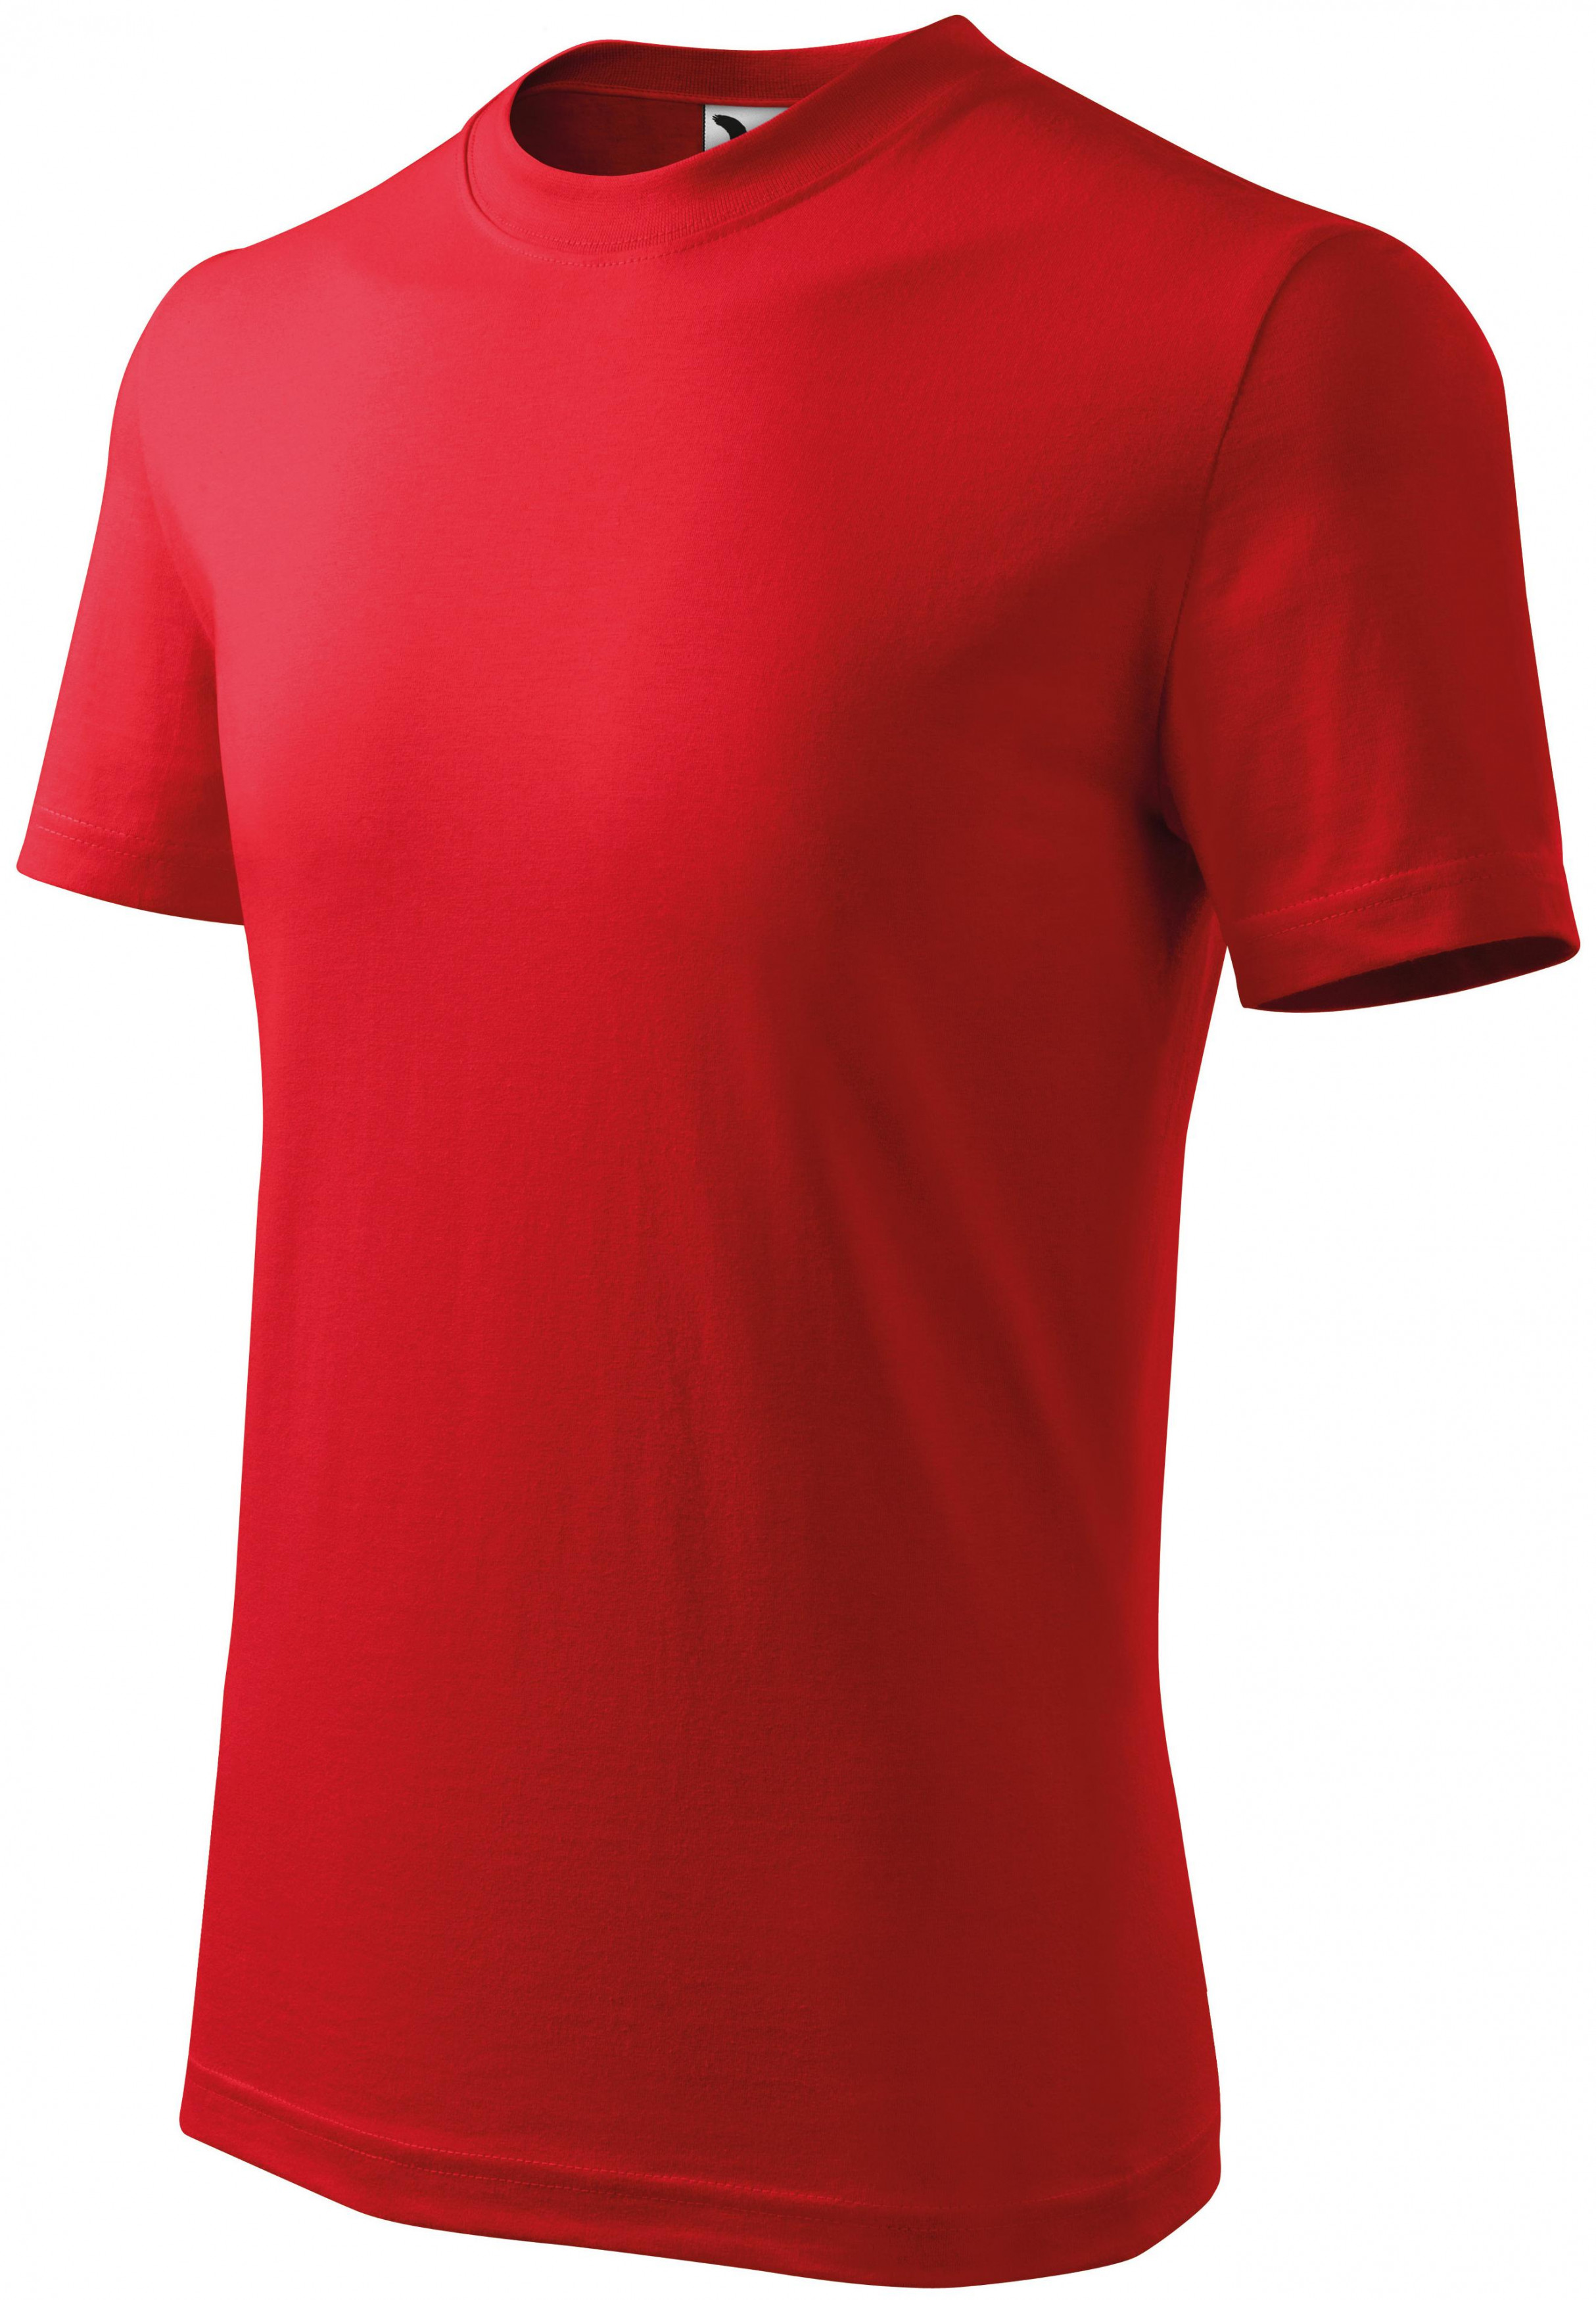 Detské tričko klasické, červená, 158cm / 12rokov